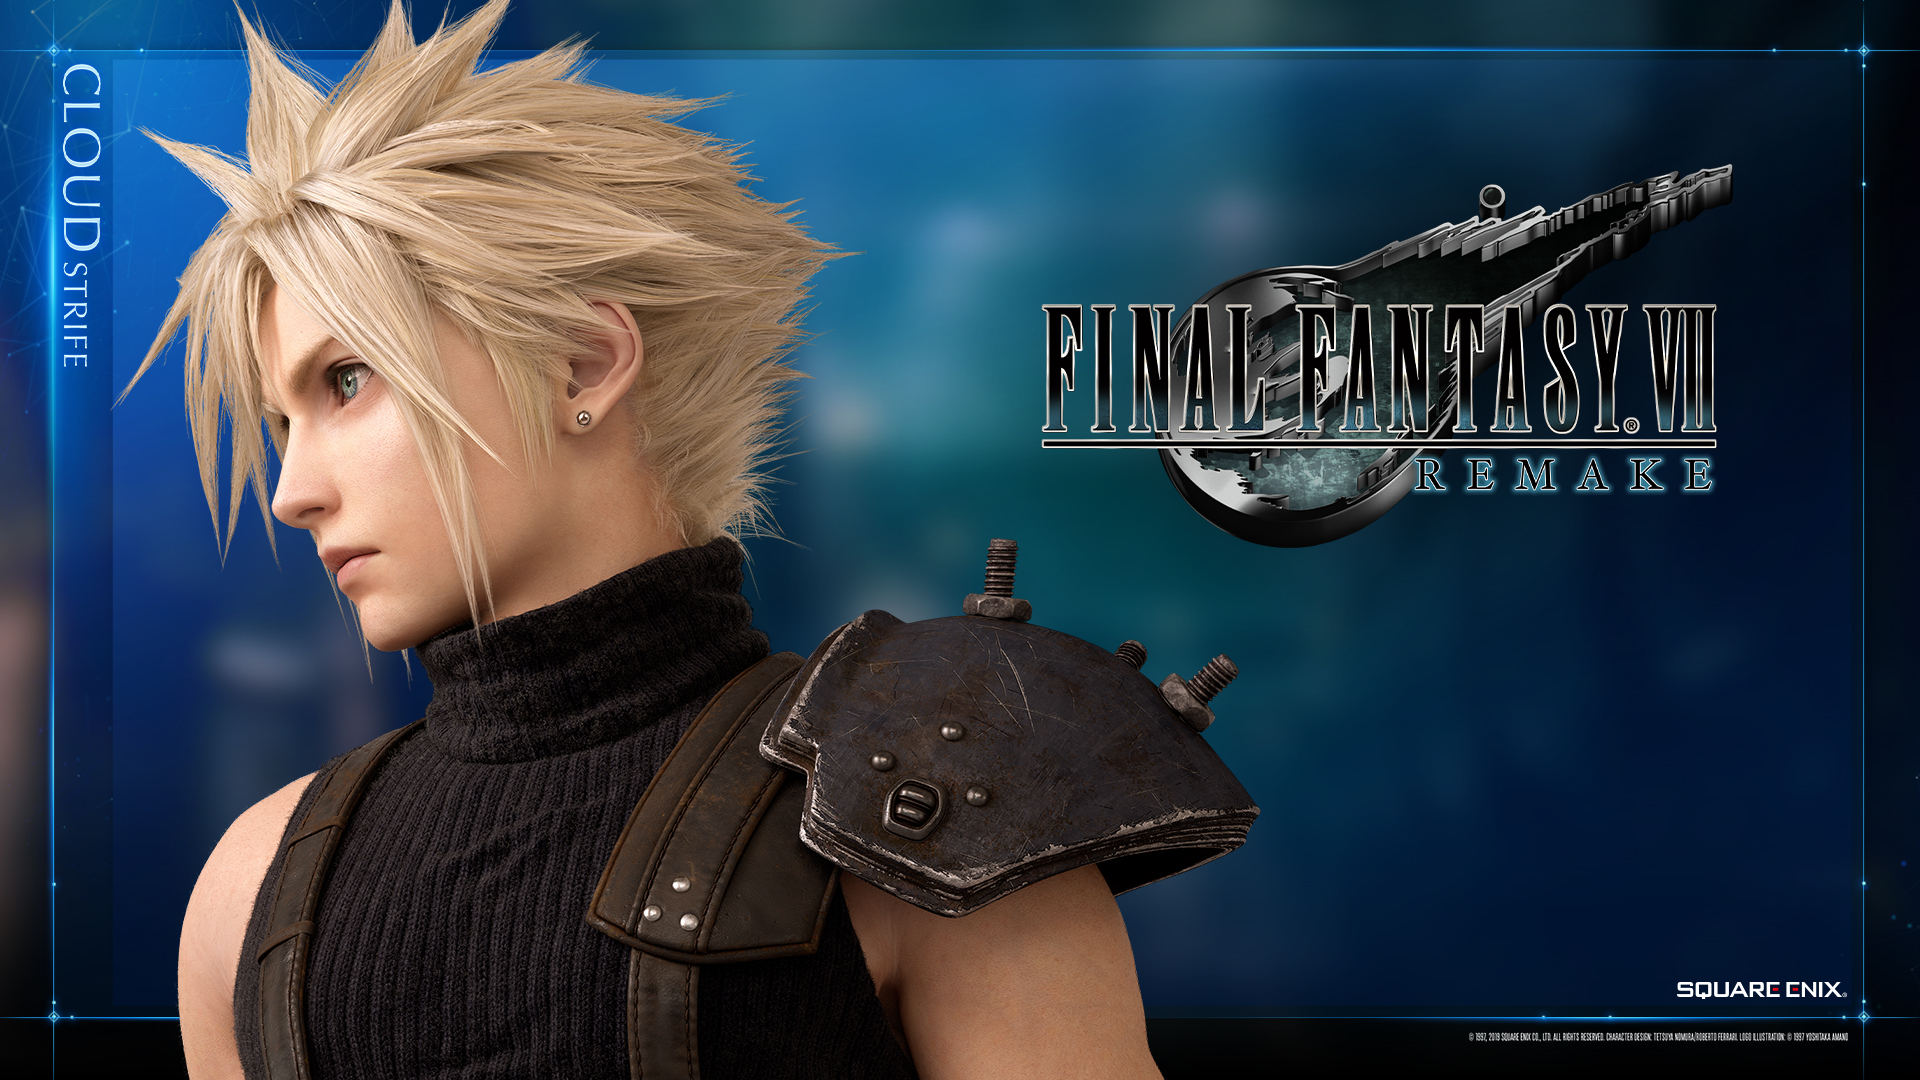 Final Fantasy Vii Remake Gets Official Wallpaper Of Cloud Strife Final Fantasy 7 Remake 